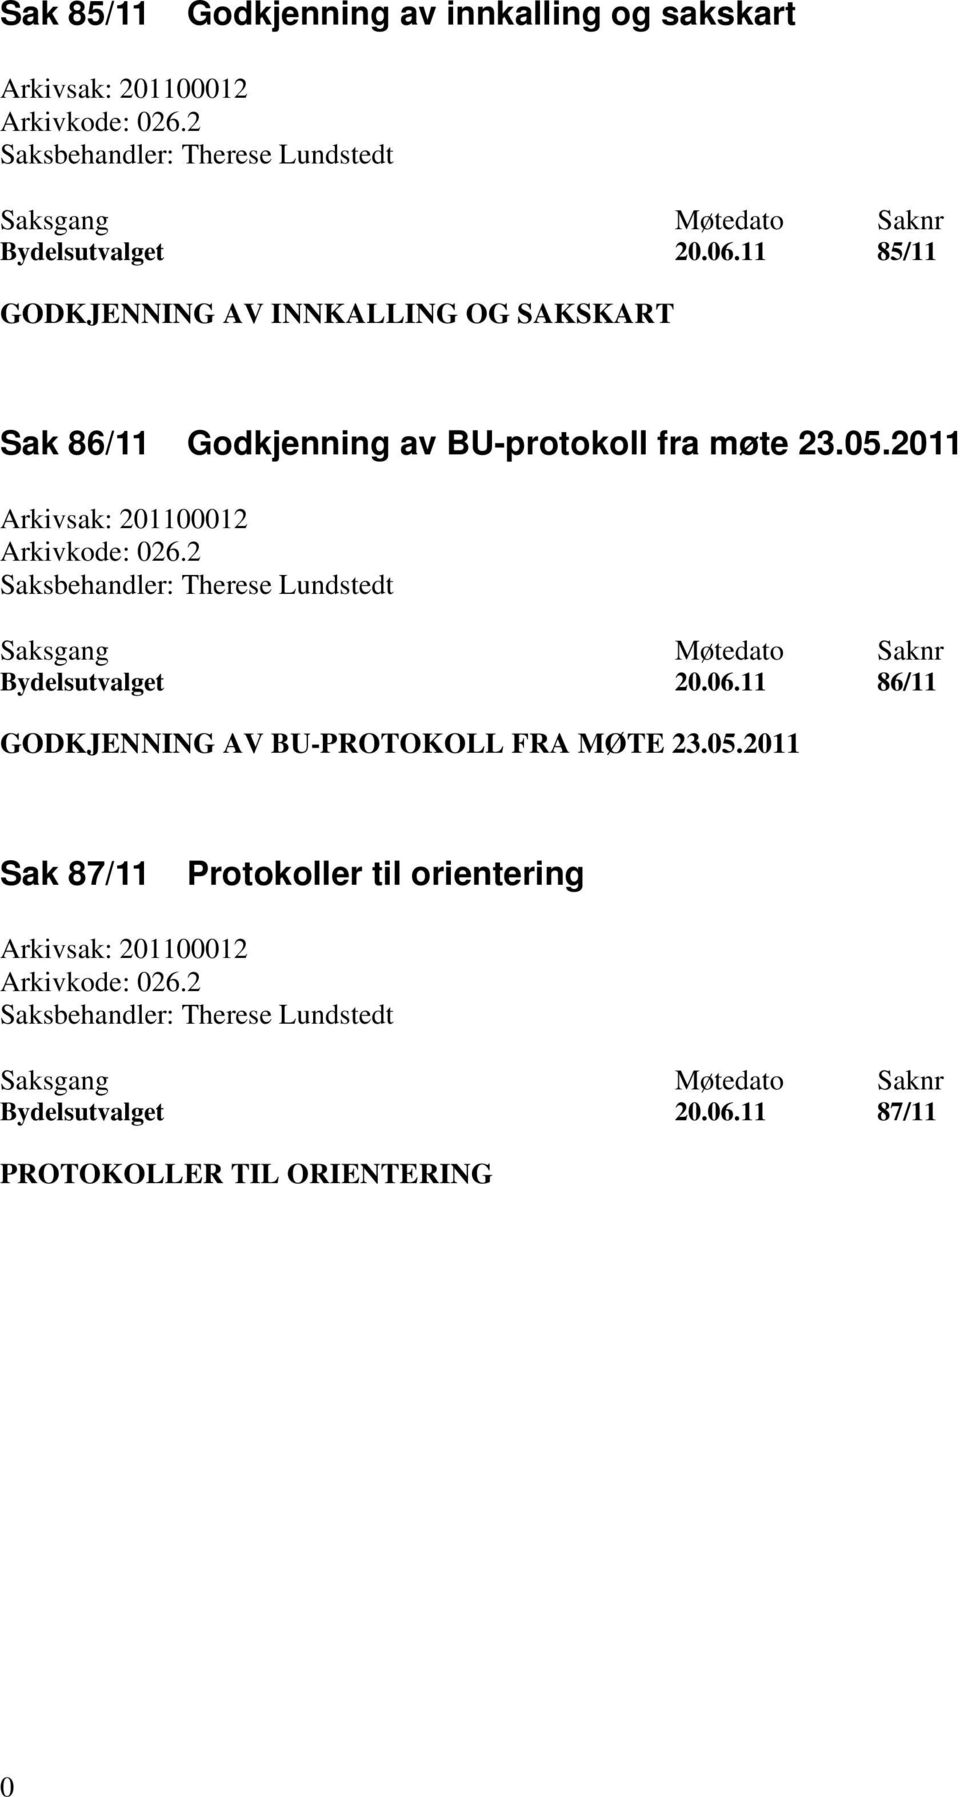 2 Saksbehandler: Therese Lundstedt Bydelsutvalget 20.06.11 86/11 GODKJENNING AV BU-PROTOKOLL FRA MØTE 23.05.